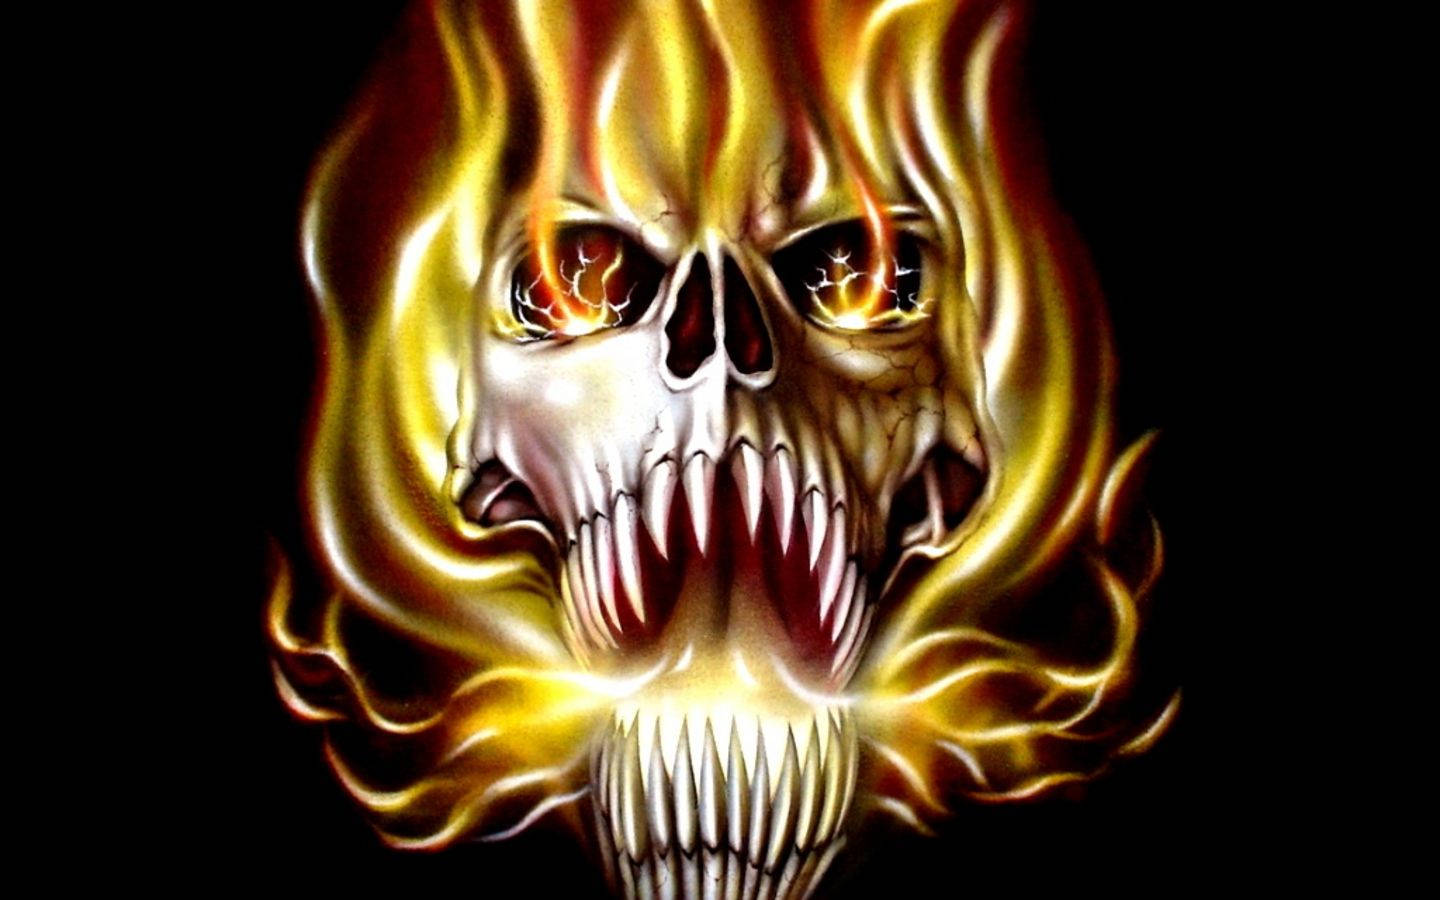 Flaming Skull Monster Background